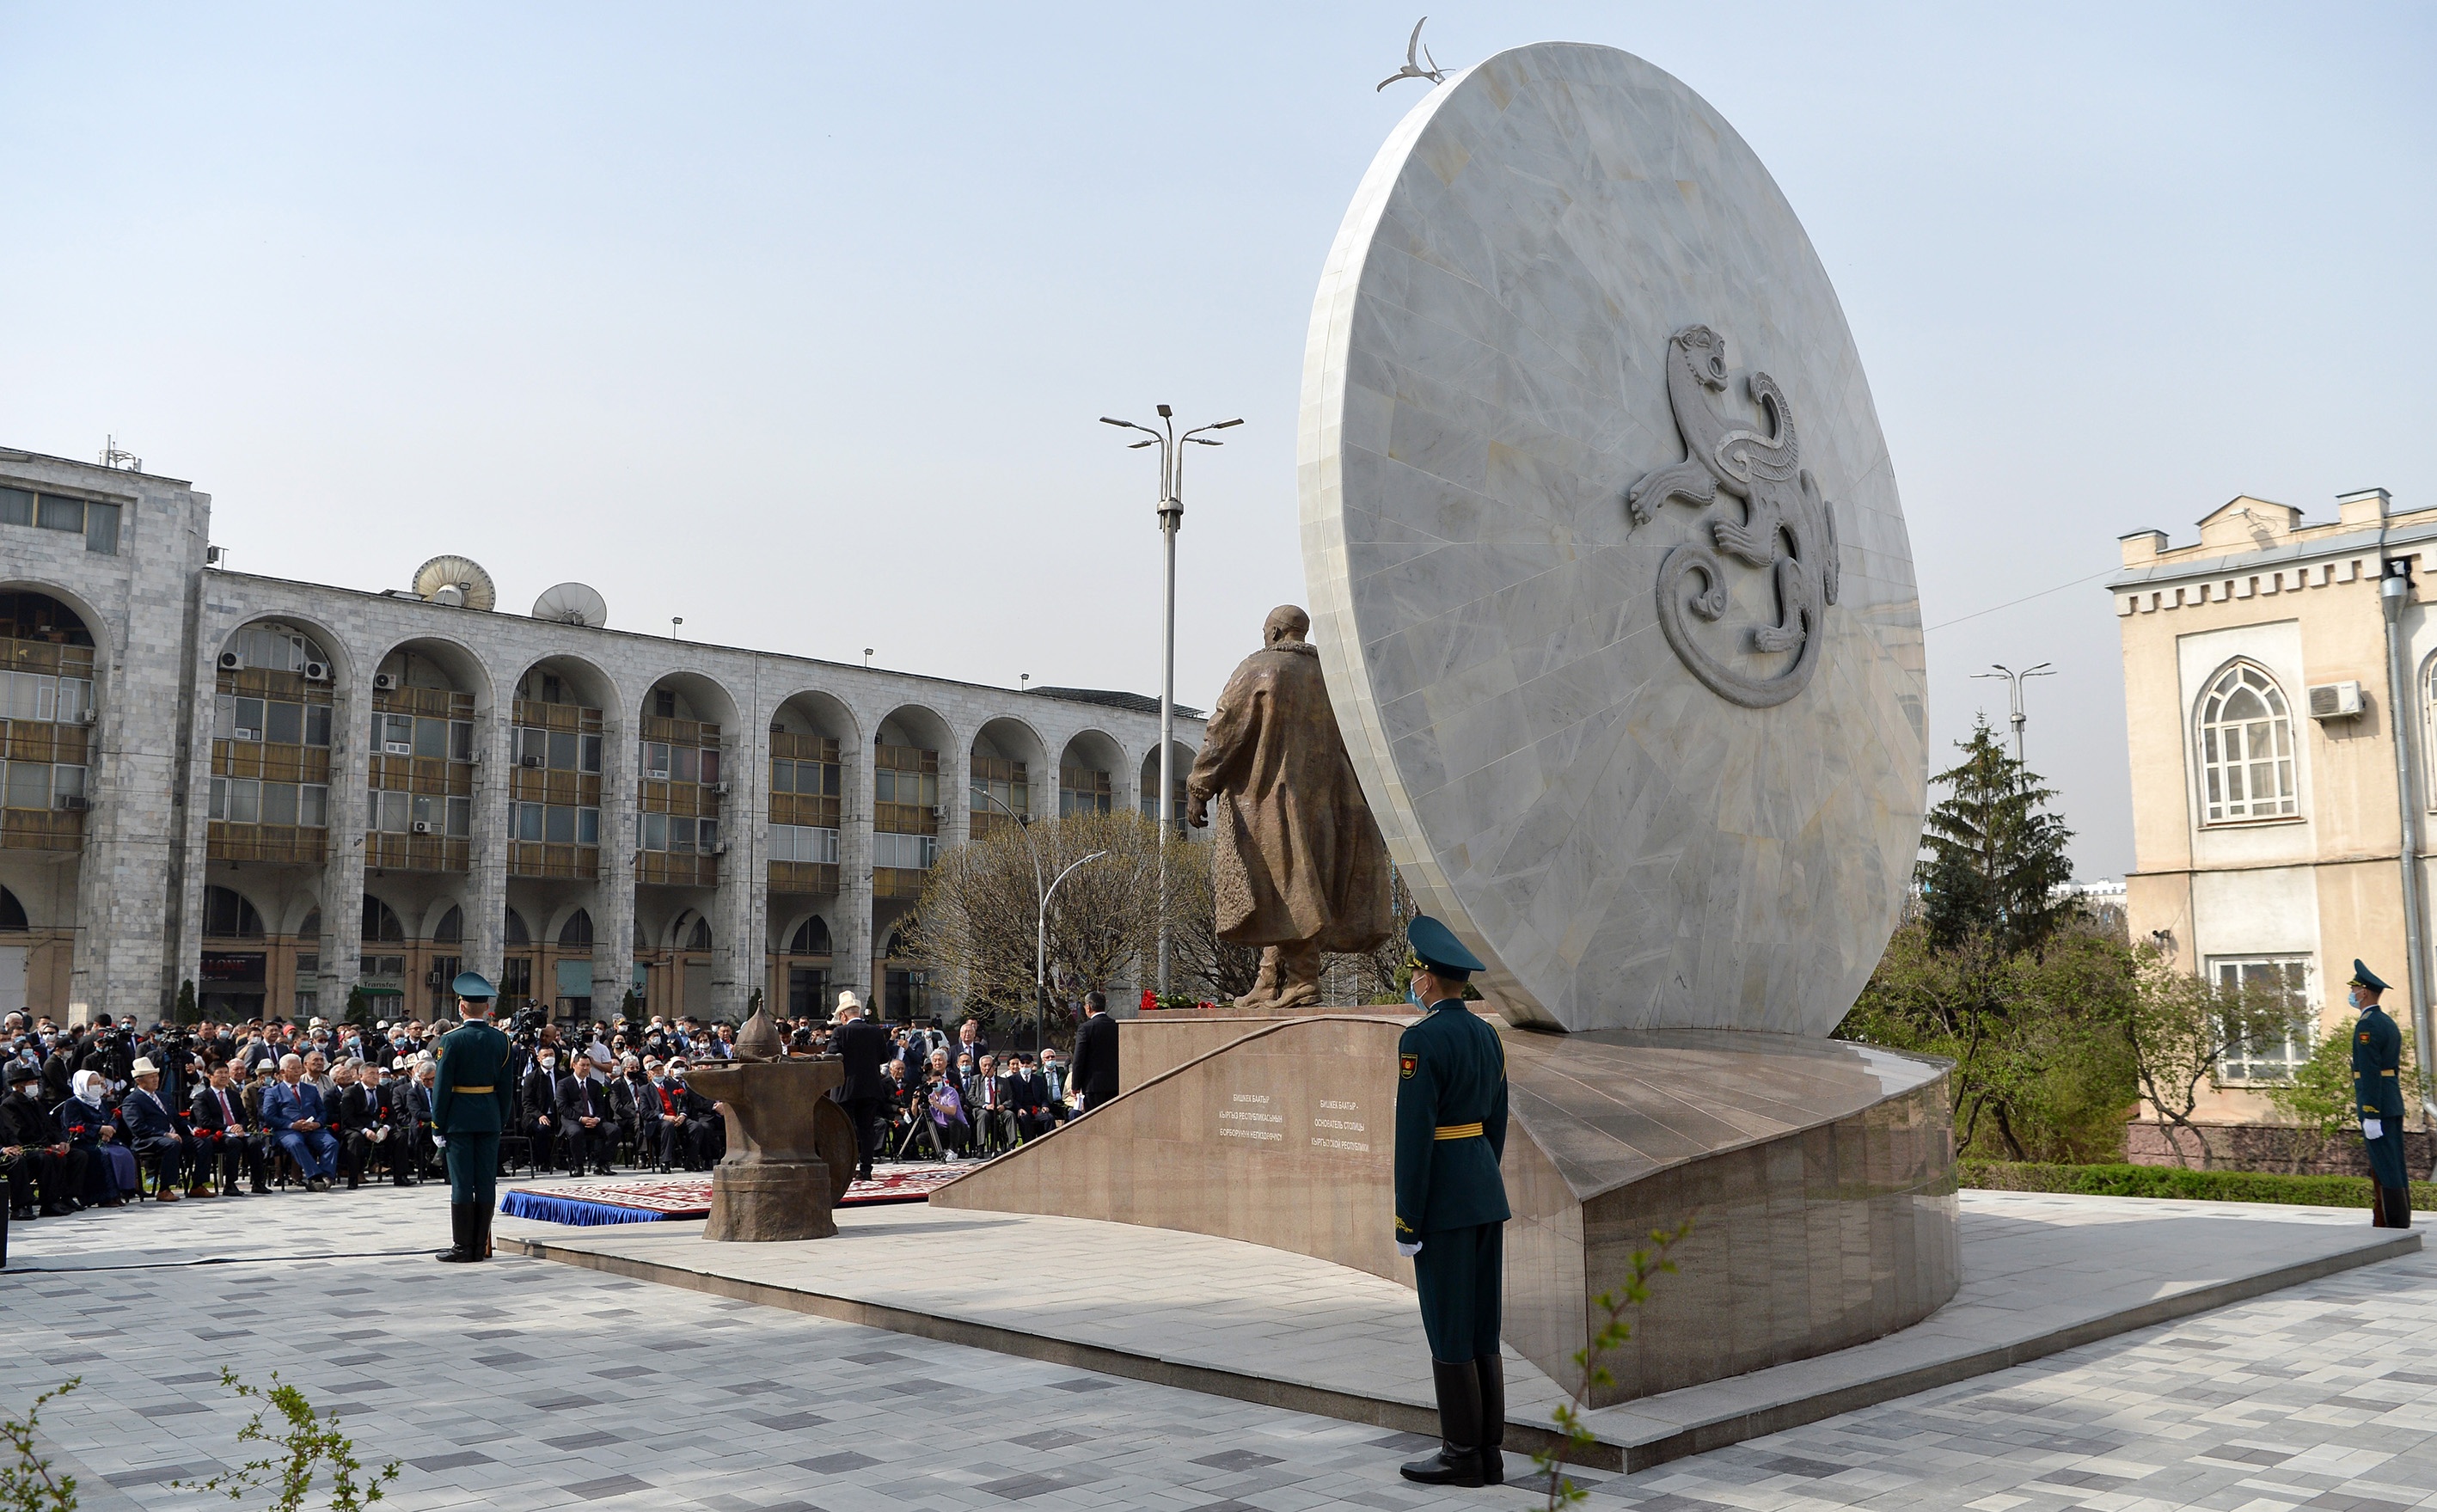 Памятник Бишкек баатыру, г. Бишкек